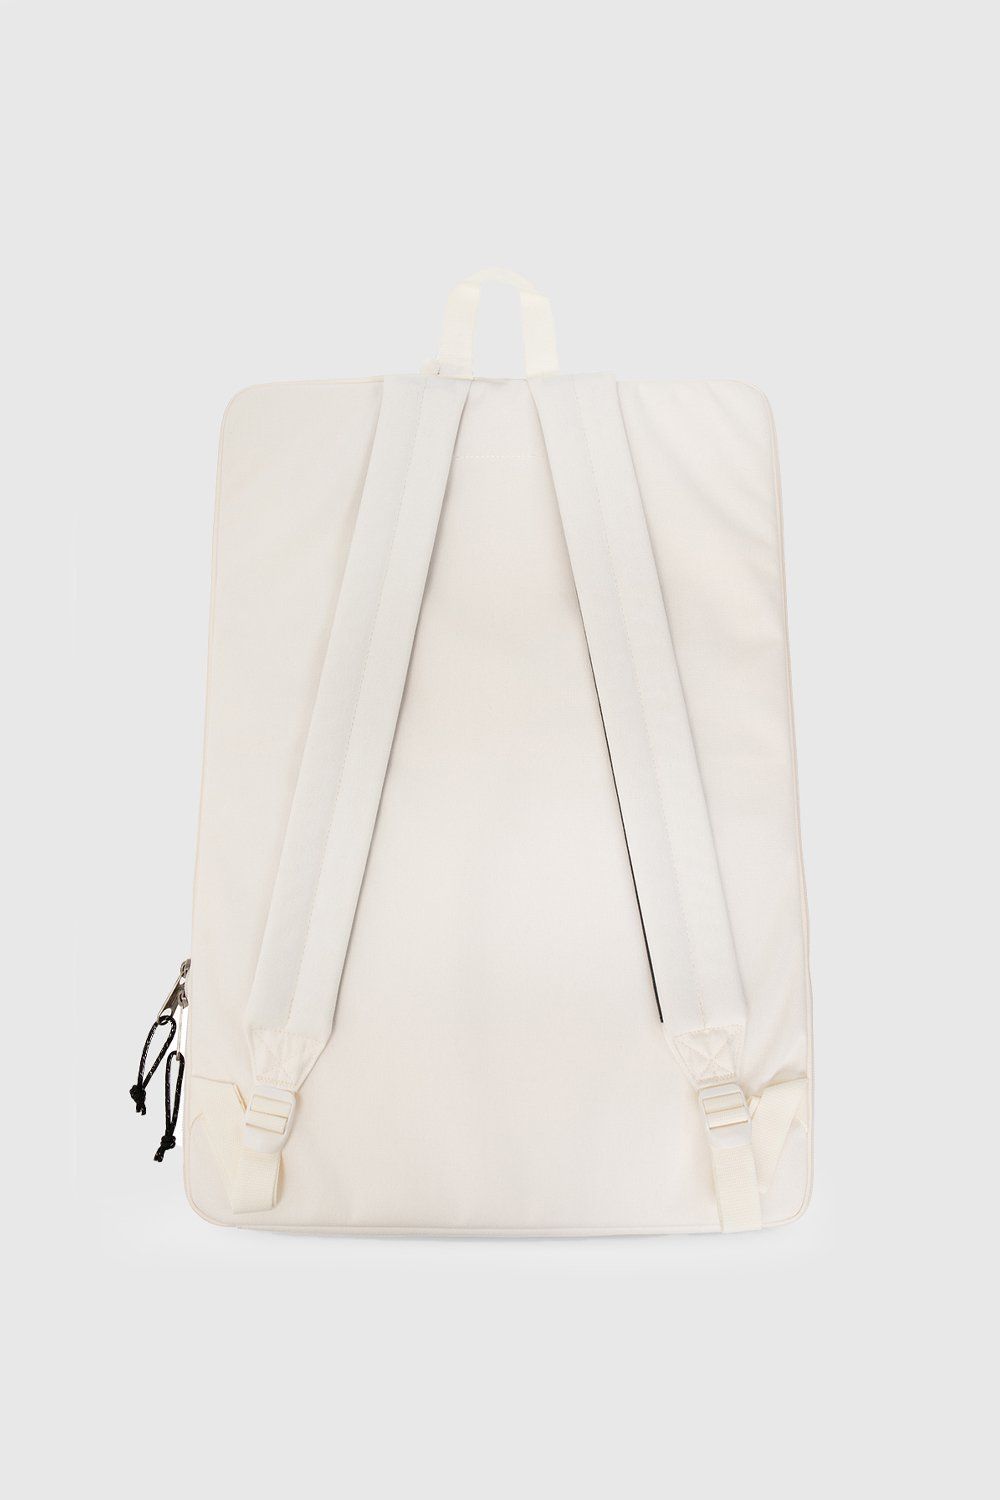 MM6 Maison Margiela x Eastpak – Zaino Backpack Whisper White - Bags - White - Image 3